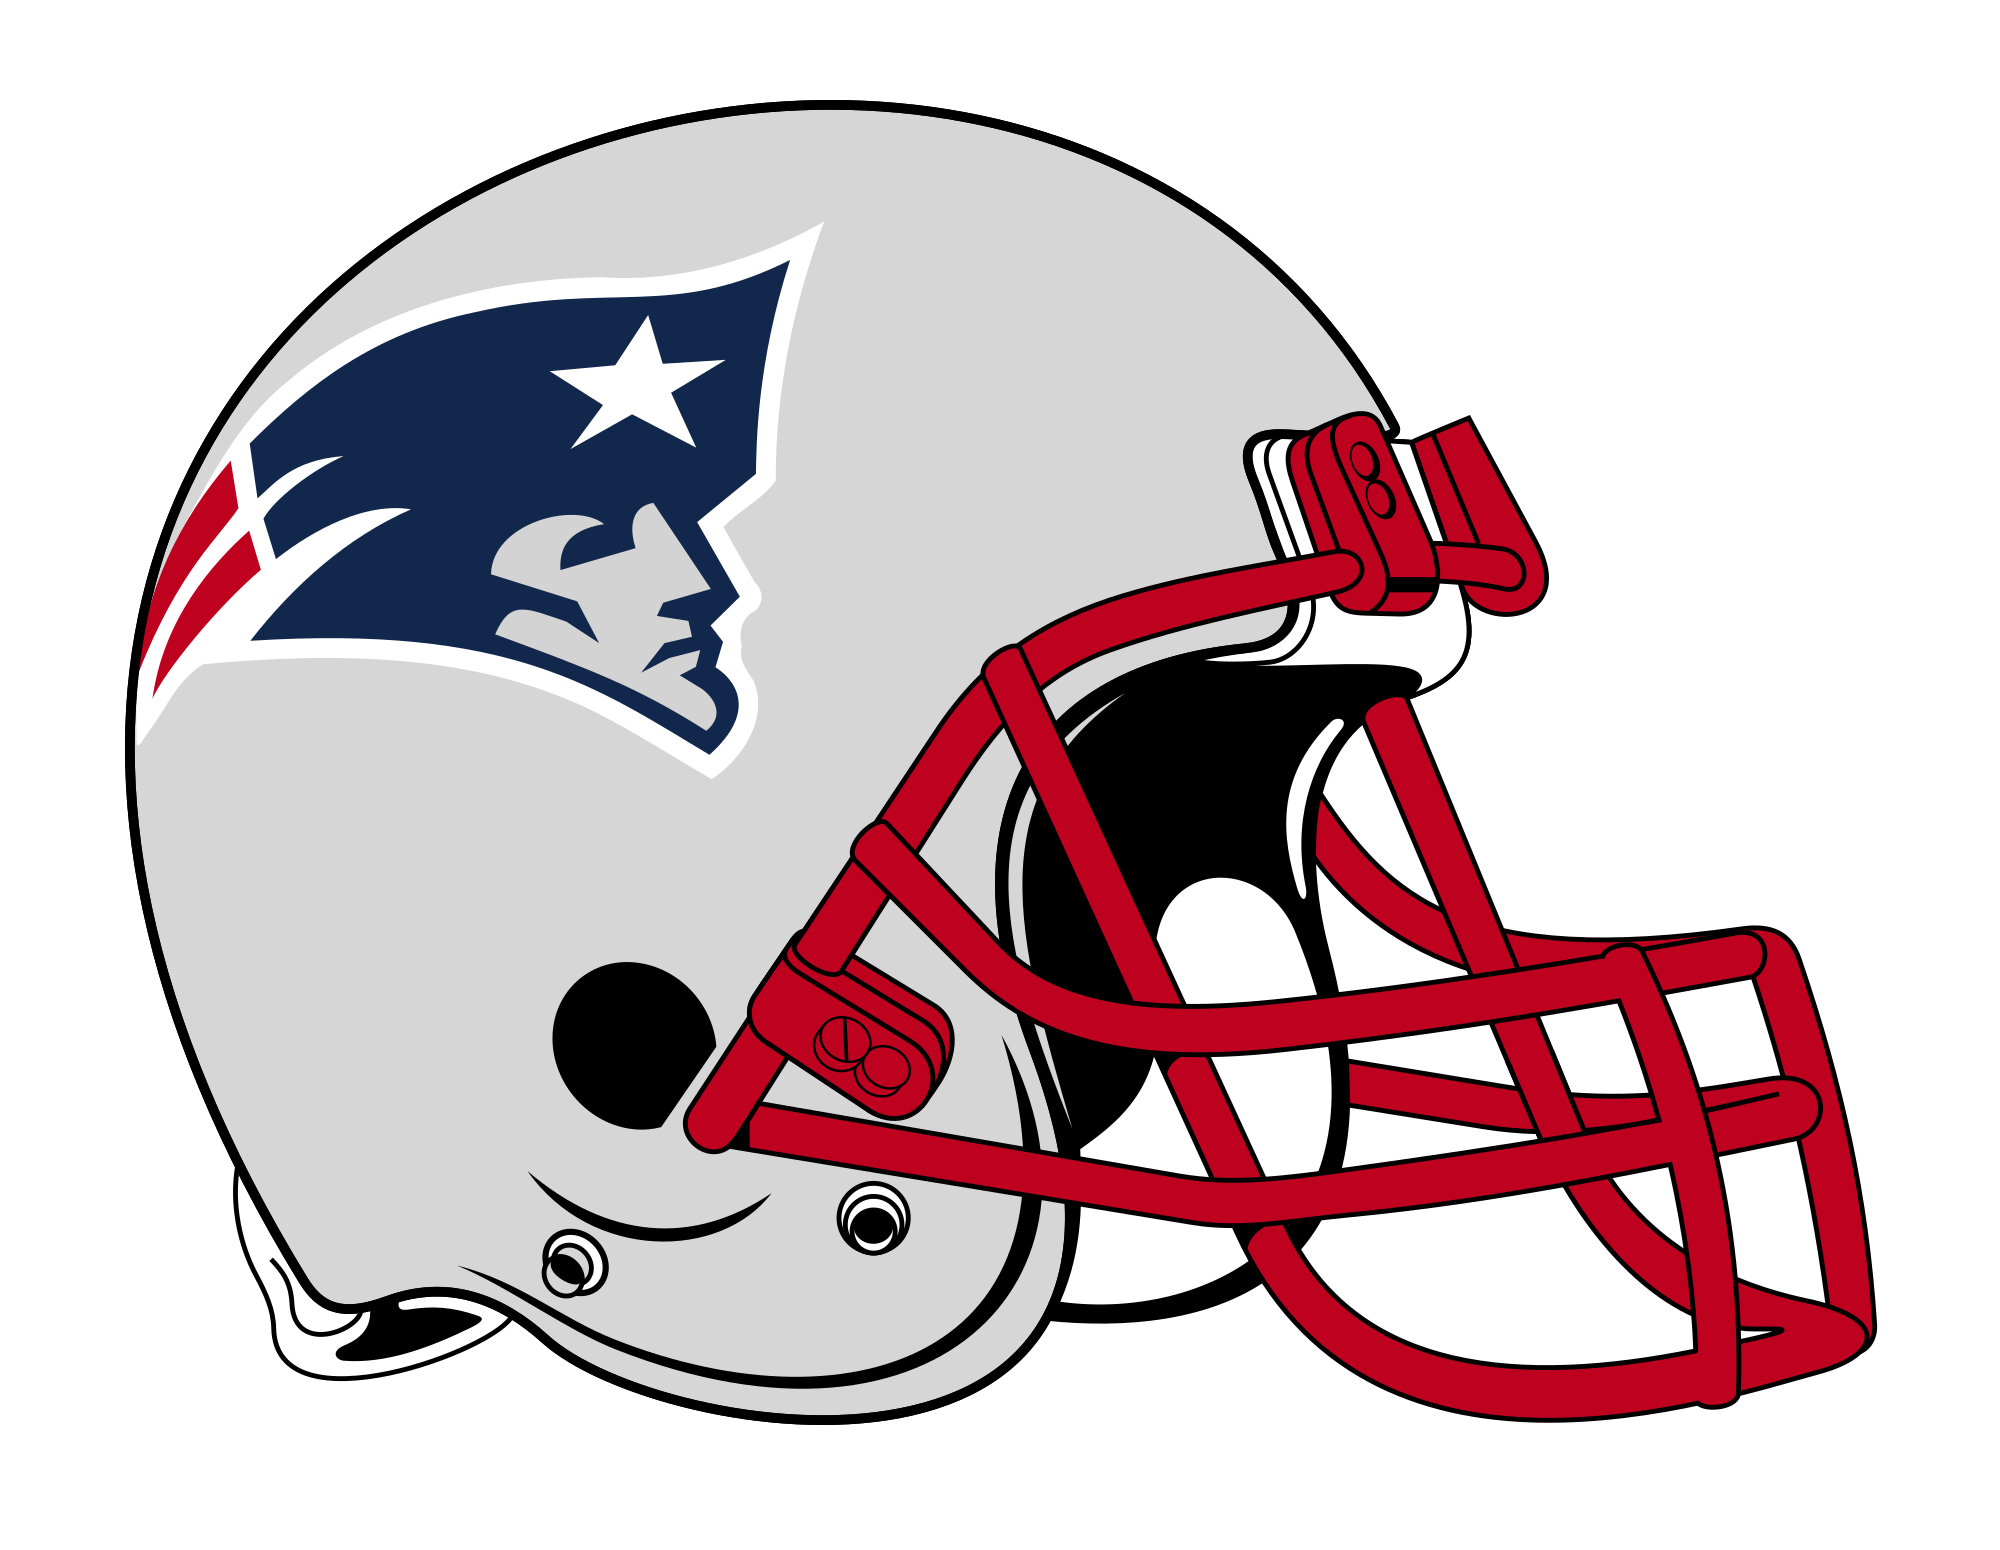 Download New England Patriots Logo Png Image For Free - New England Patriots, Transparent background PNG HD thumbnail